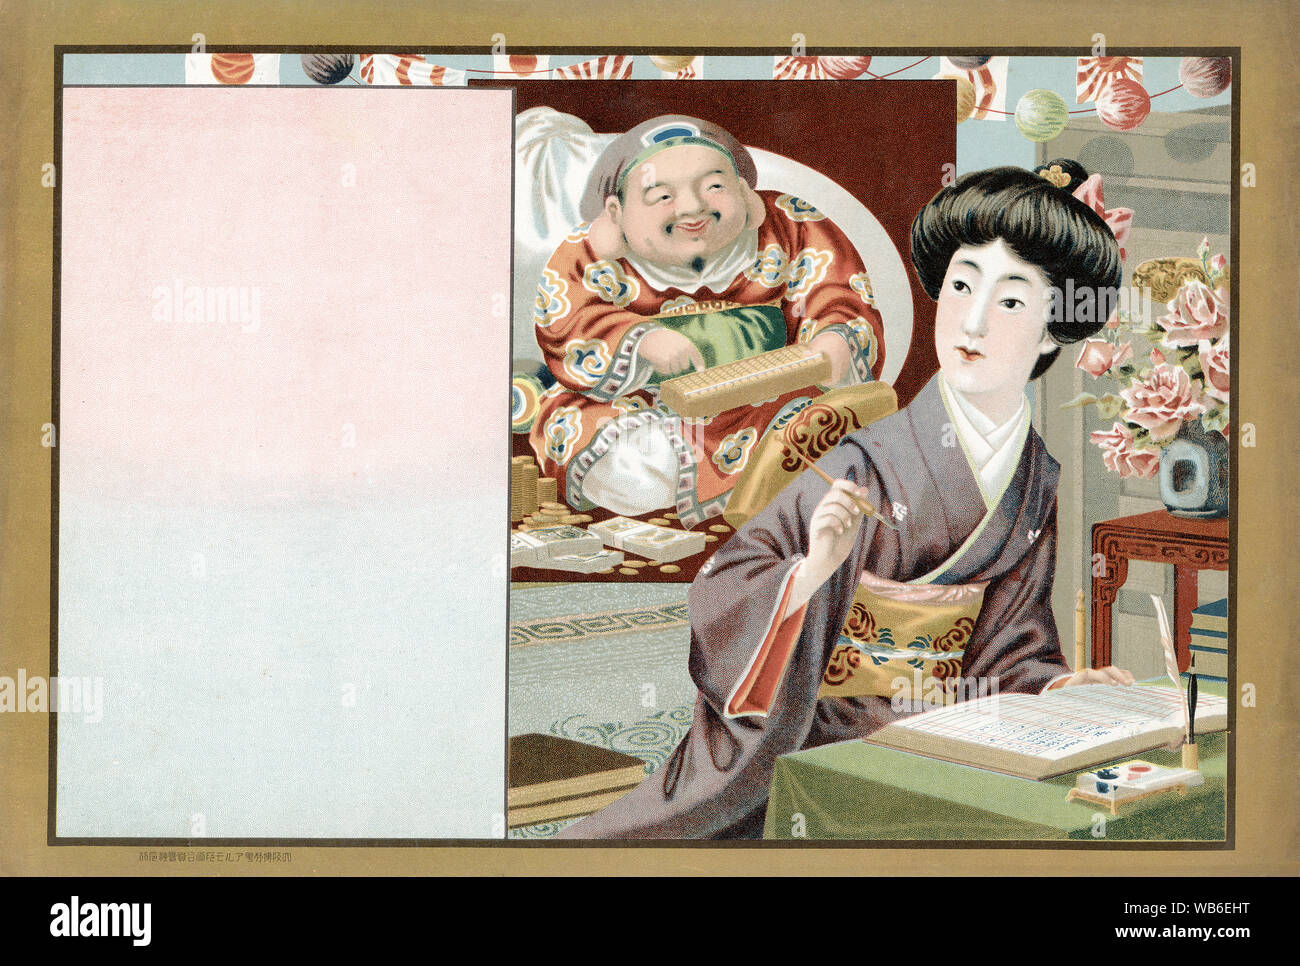 [1920s Japan - Japanische Business Frau auf einem Werbung Flyer] - Hikifuda (引札), einen Ausdruck als Werbe Flyer von den lokalen Geschäften. Sie waren populär aus den 1800er bis in die 1920er Jahre. Eine Frau im Kimono sporting eine moderne Frisur tut Buchhaltung während Ebisu, einer der sieben Gottheiten der Fortune (shichi Fukujin), auf der Rückseite aussieht. 20. jahrhundert Vintage Werbung Flyer. Stockfoto